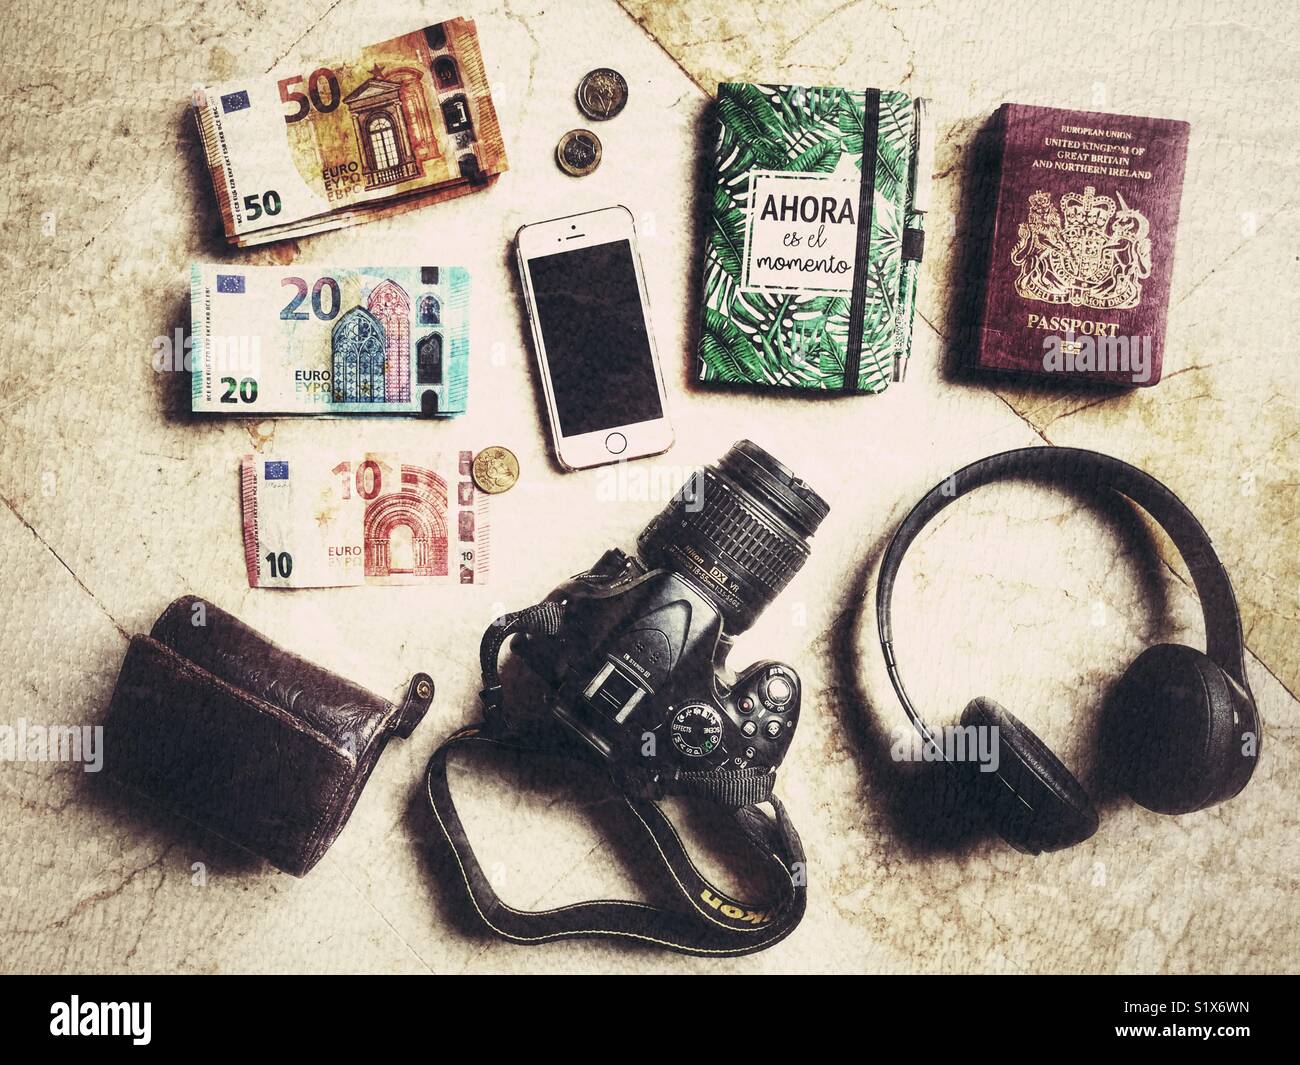 Flatlay Fotografie, Reisen Artikel einschließlich Portemonnaie, Reisepässe, DSLR-Kamera, Beat Kopfhörer, Notebooks, iPhone, und Euro. Stockfoto